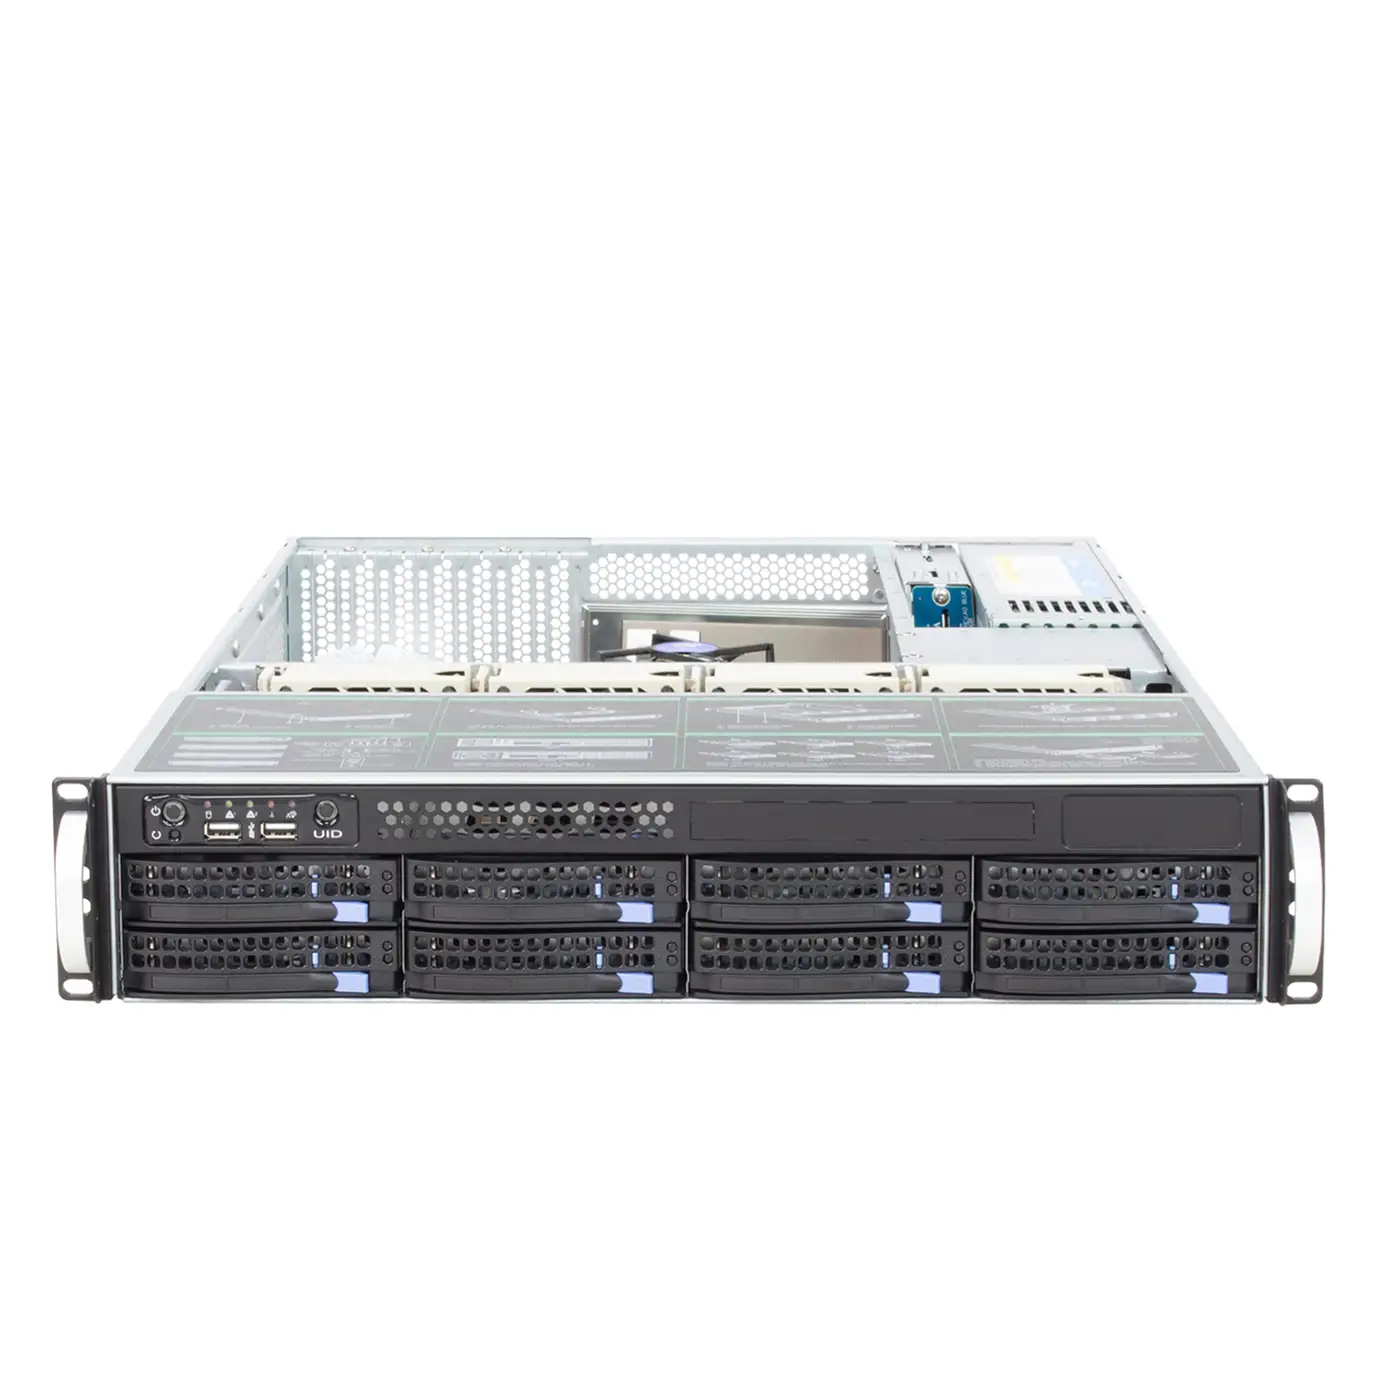 2U 8 секций корпус сервера горячей замены Xeon 4110 заводской HHD мини-сервер linux сетевой gpu сервер